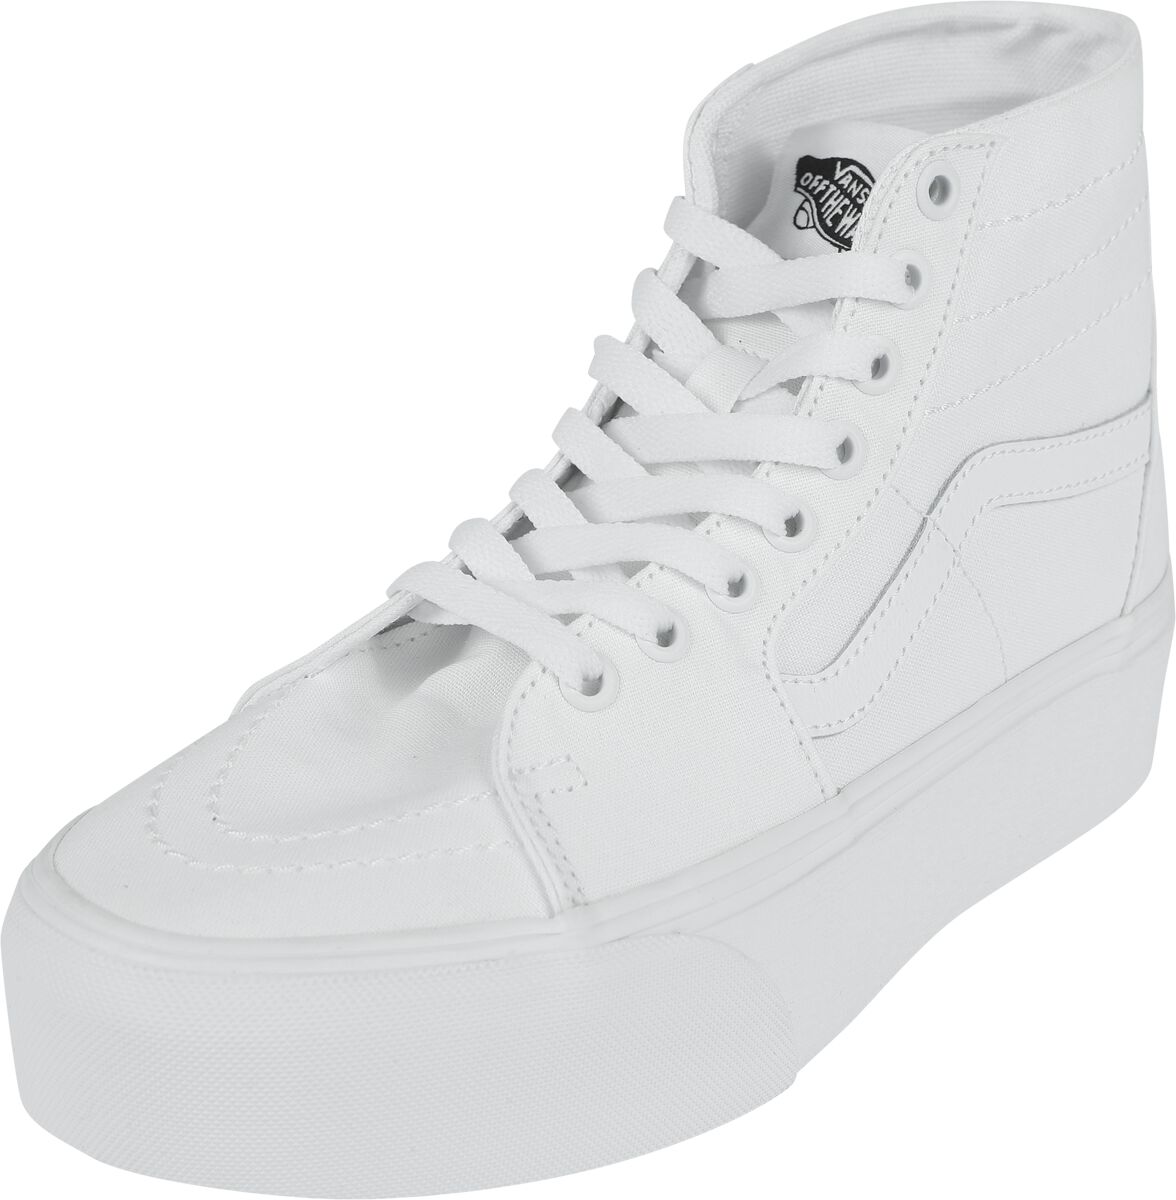 Vans Sneaker high - SK8-Hi Tapered Stackform Canvas True White - EU37 bis EU41 - für Damen - Größe EU39 - weiß